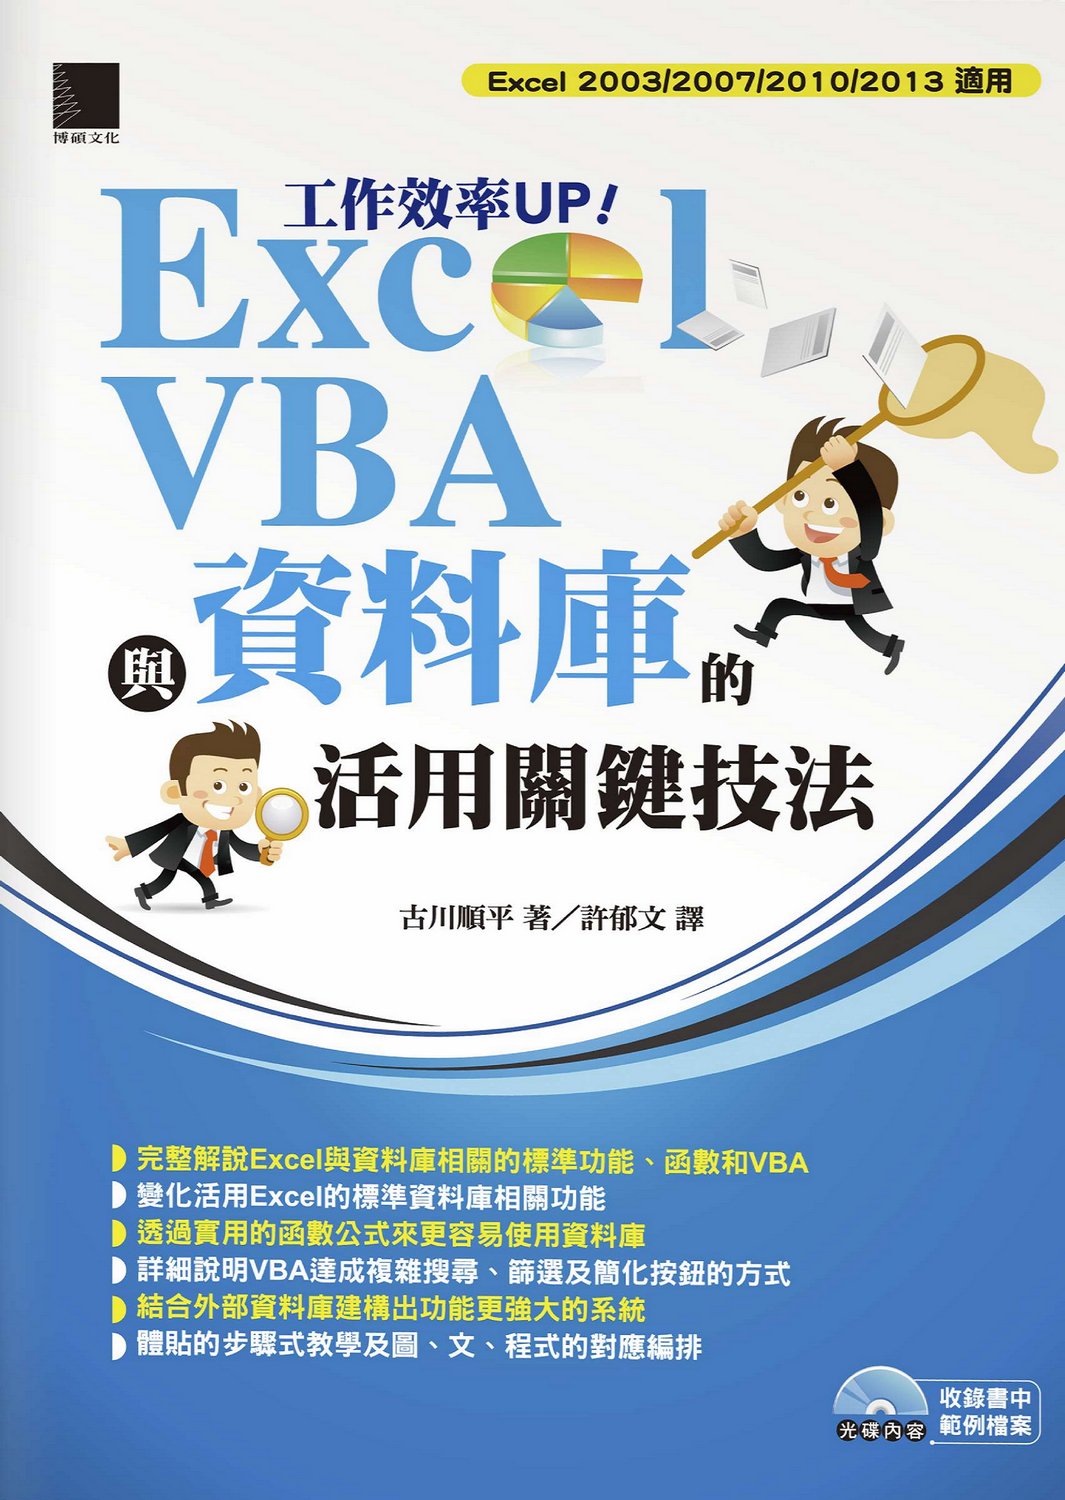 工作效率UP! Excel VBA與資料庫的活用關鍵技法